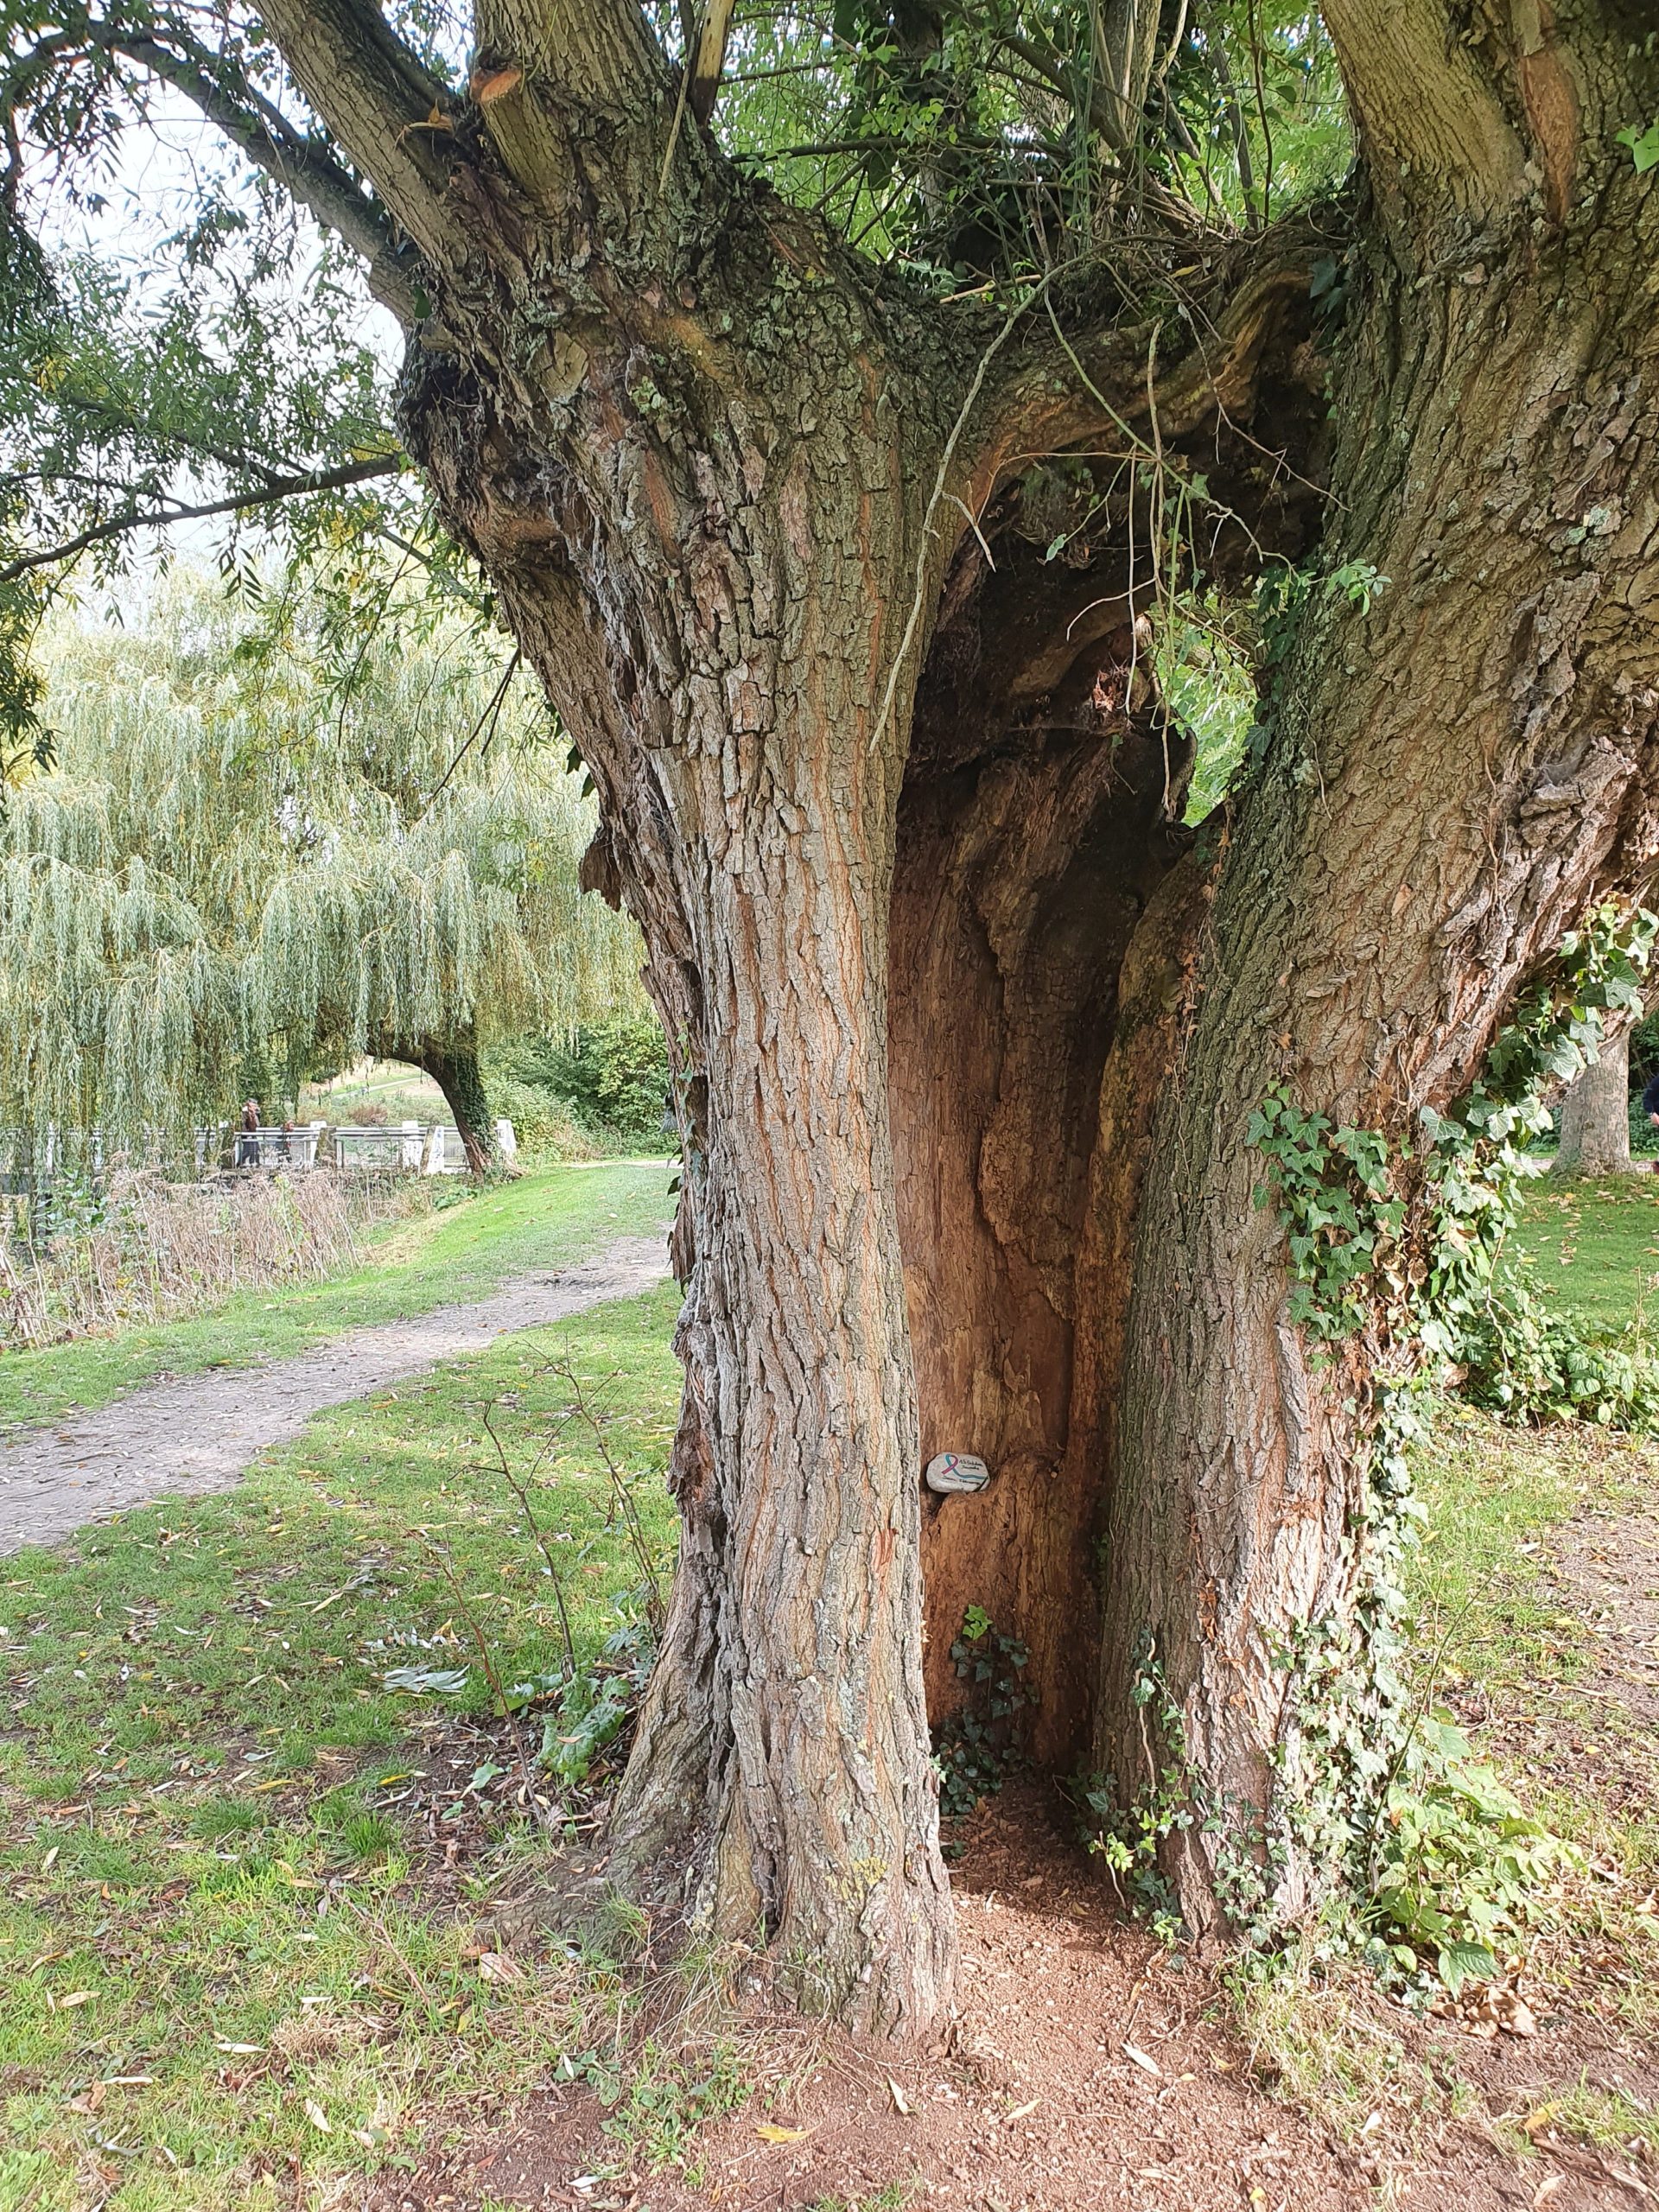 Le galet est caché dans le tronc fendu du vieil arbre.